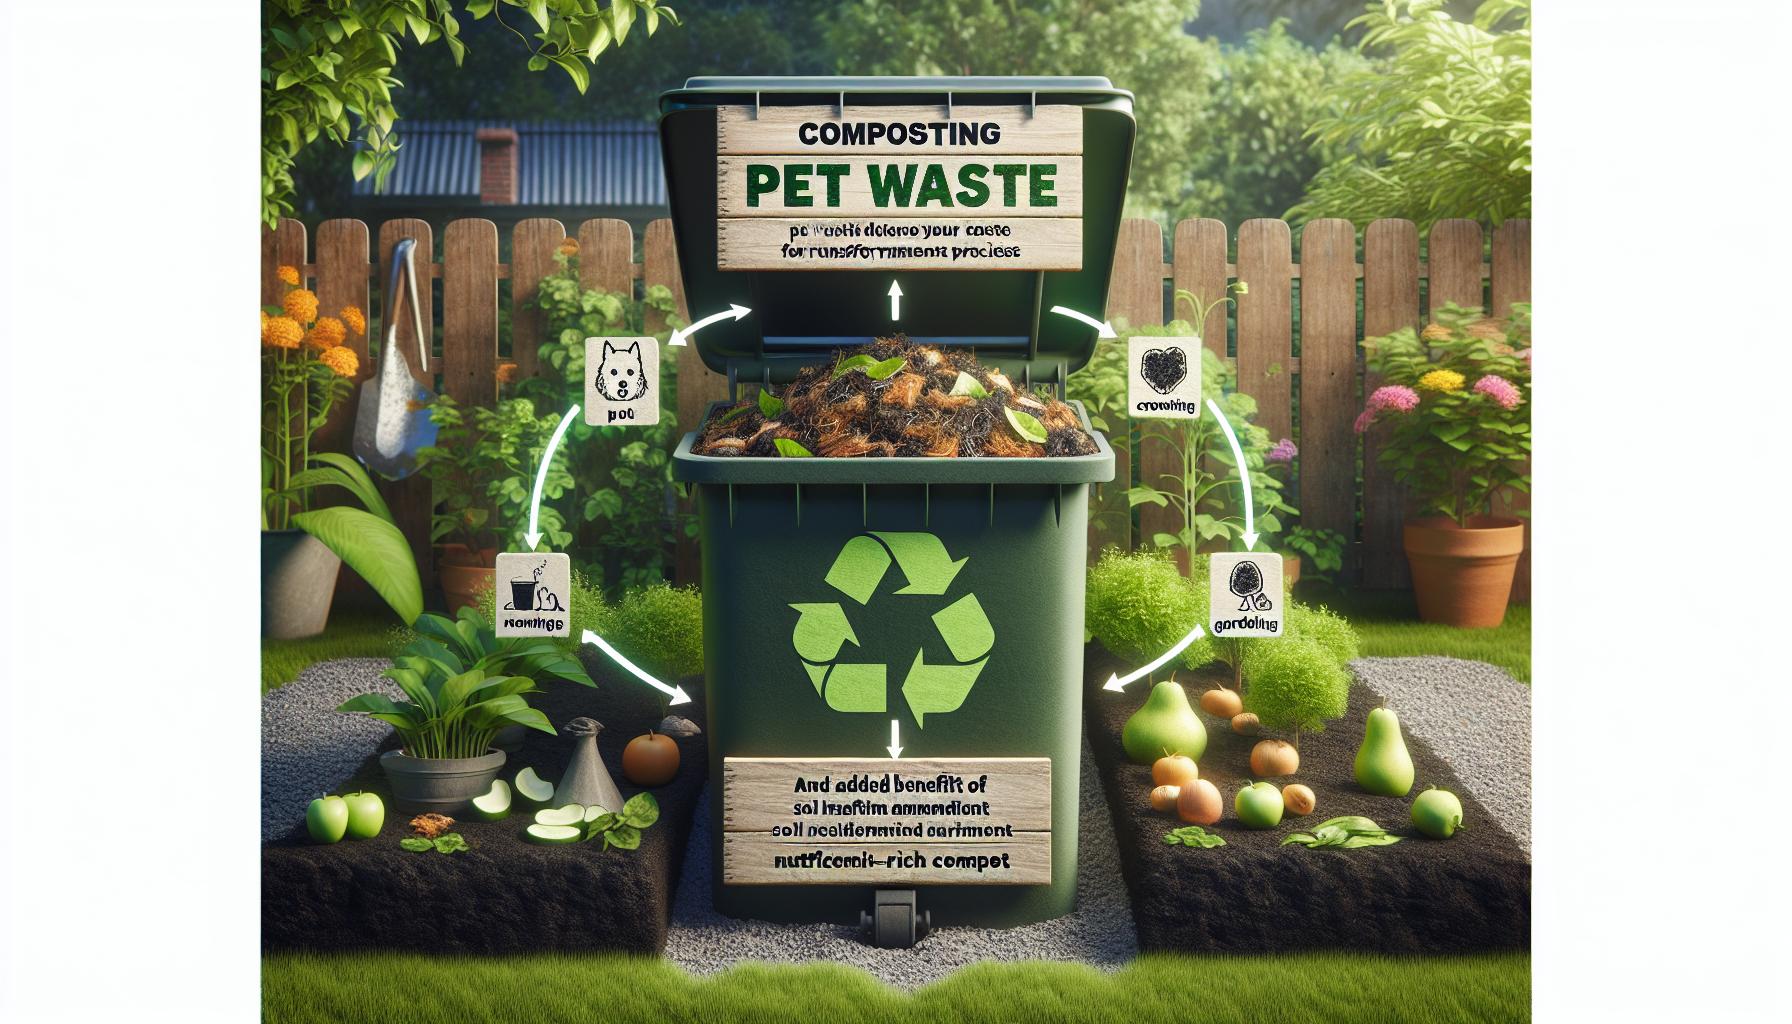 Composting Pet Waste Reducing Environmental Impact